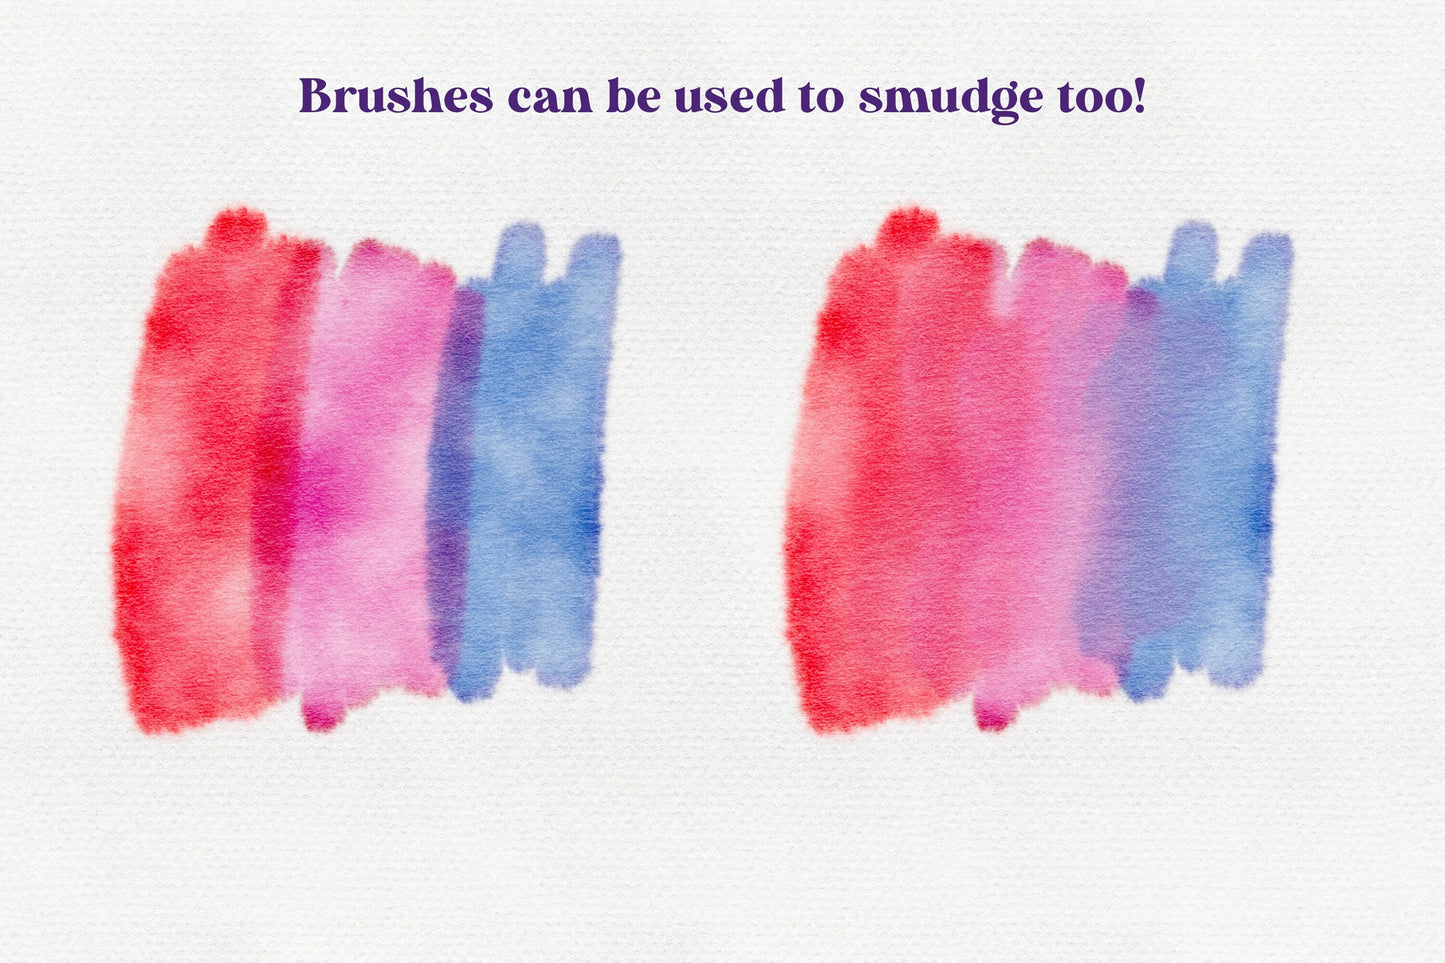 Basic Watercolor Procreate Brushes